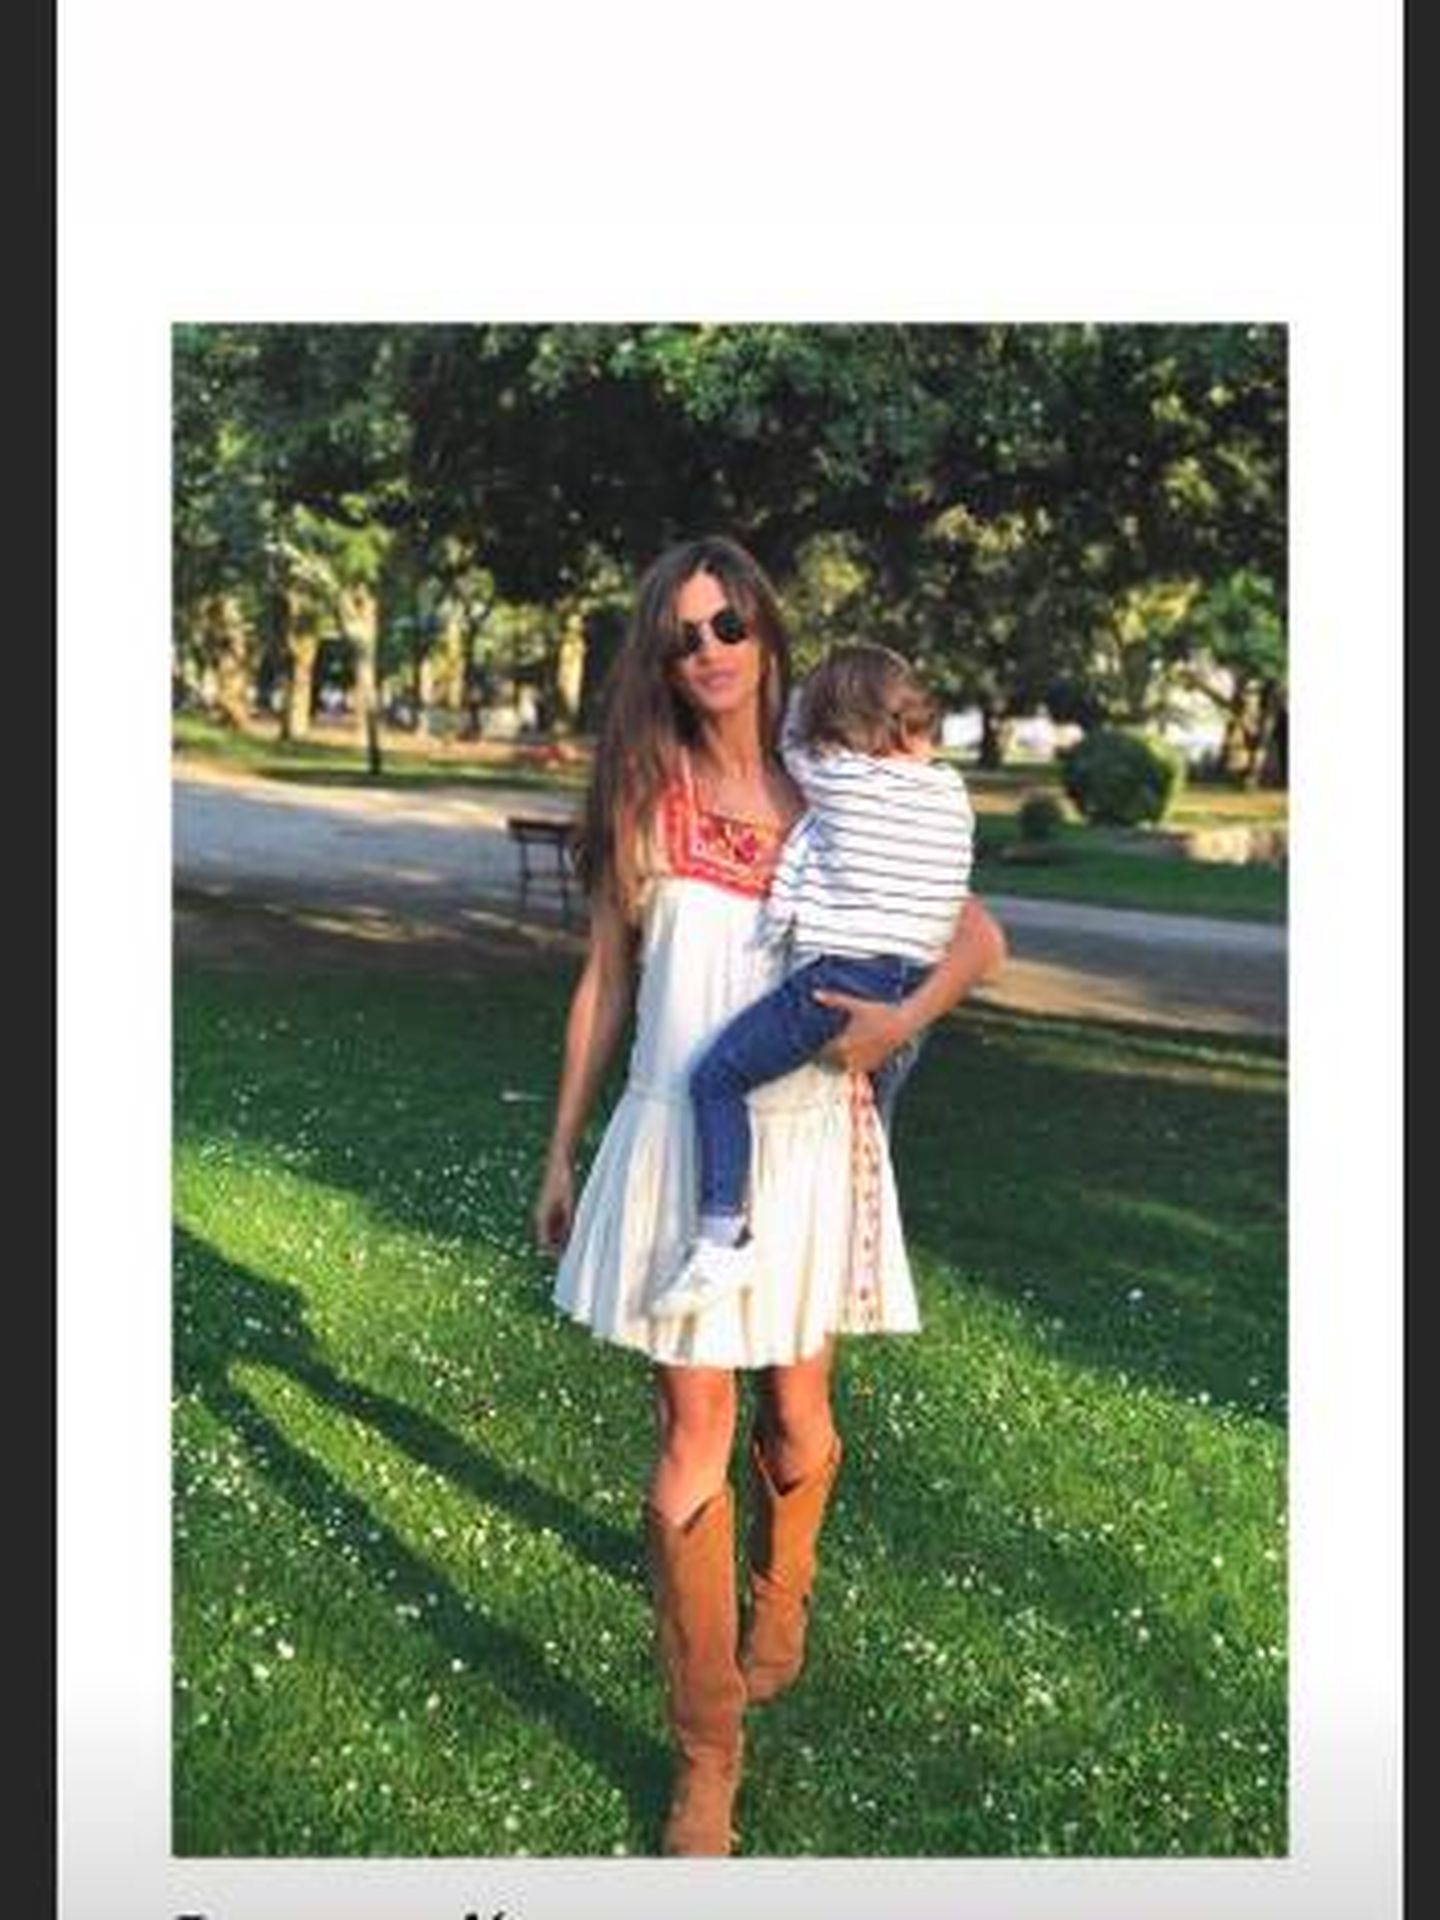 Sara Carbonero, con uno de sus hijos en brazos, luciendo el vestido en cuestión.  (Instagram)